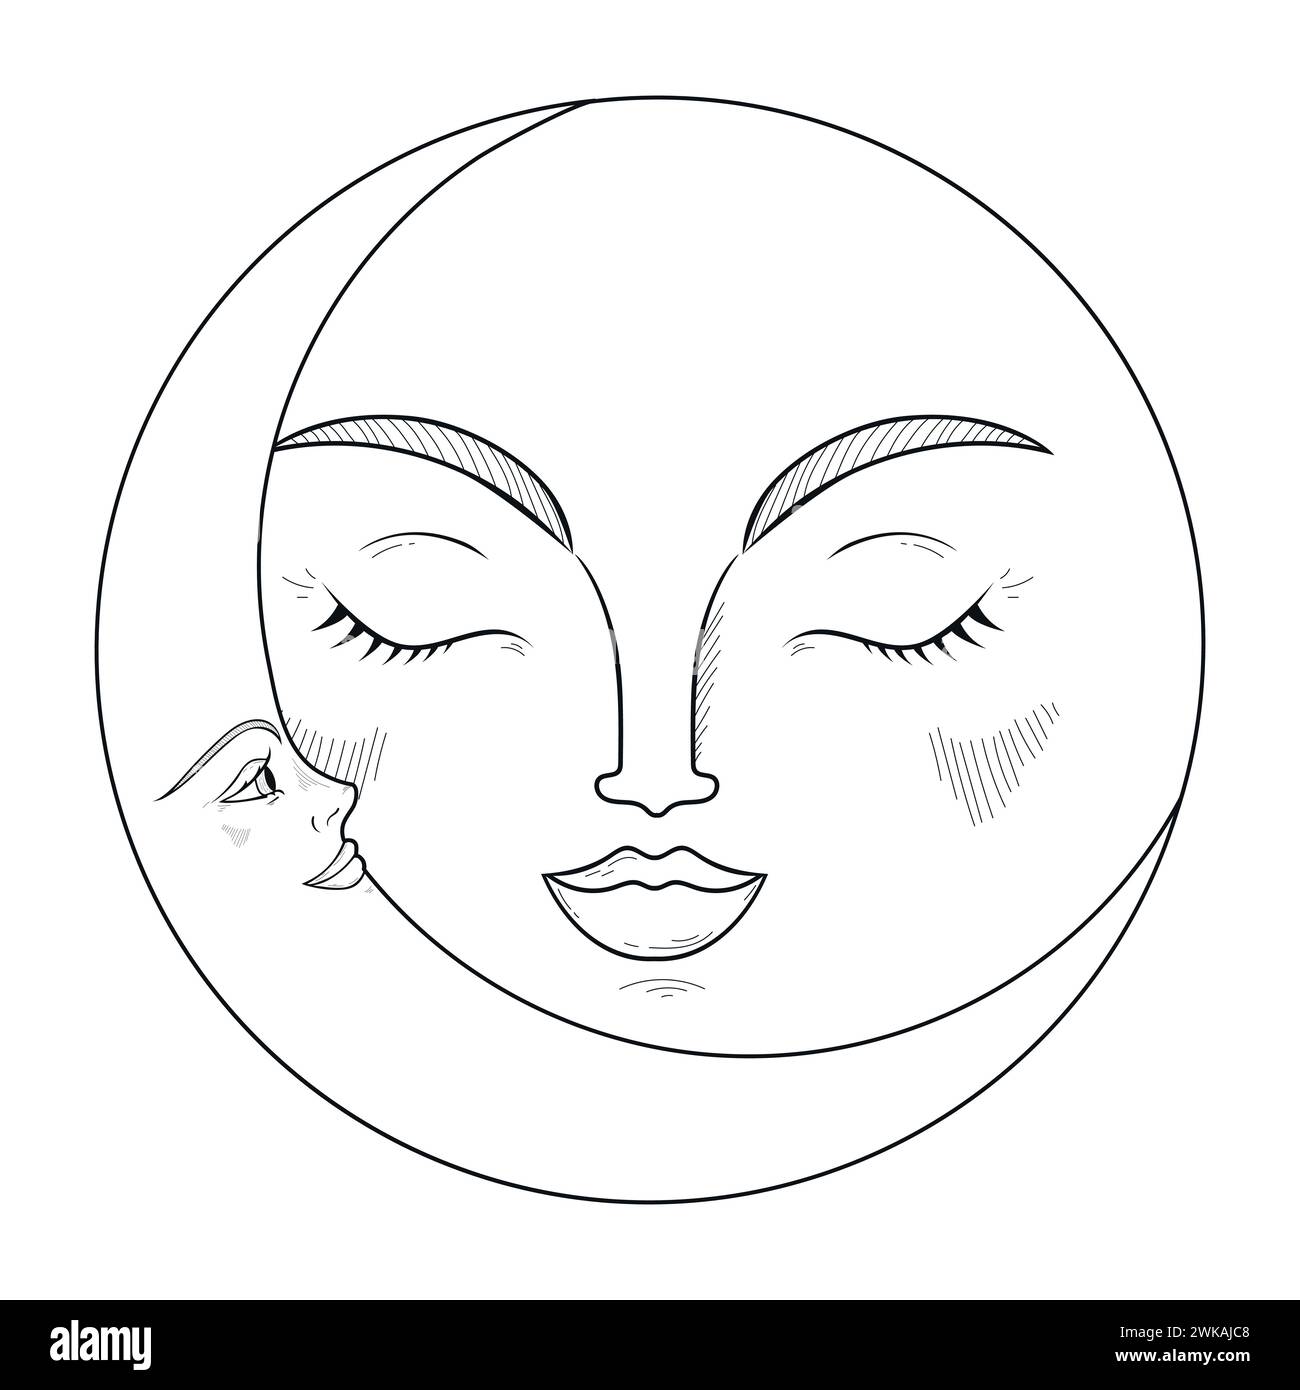 Handgezeichnetes Emblem mit Halbmond und Mond. Monochrome magische Vektorillustration Stock Vektor